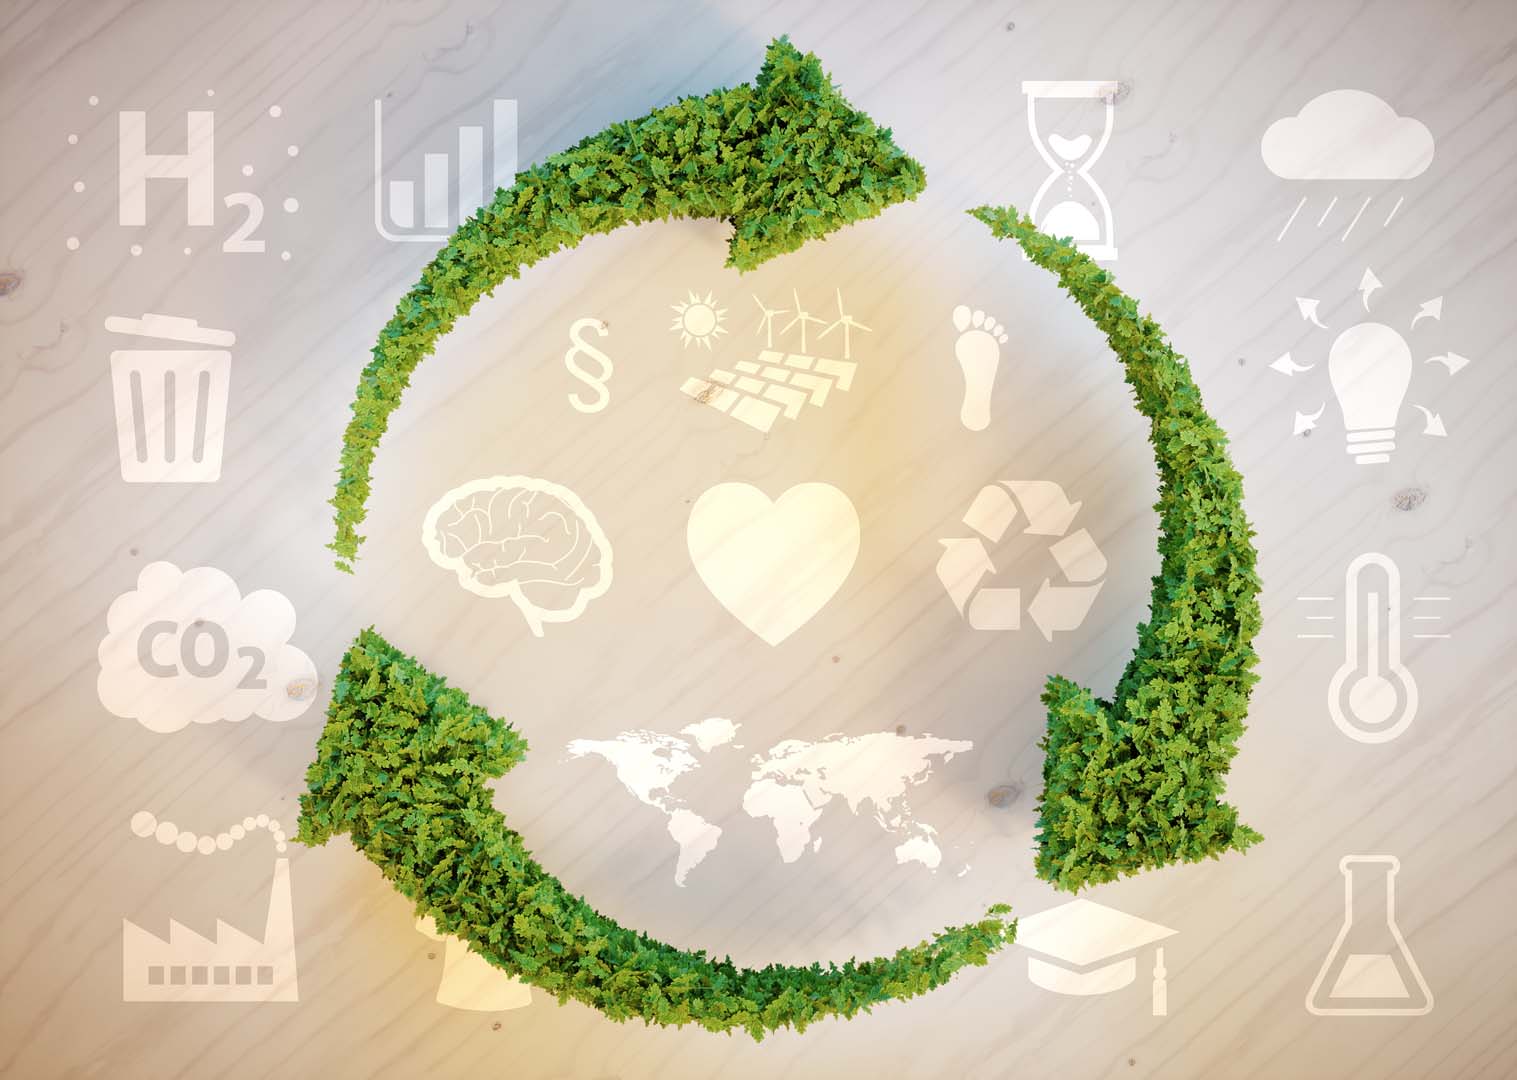 Emissioni: Gnl, la soluzione sostenibile per ambiente e mezzi pesanti